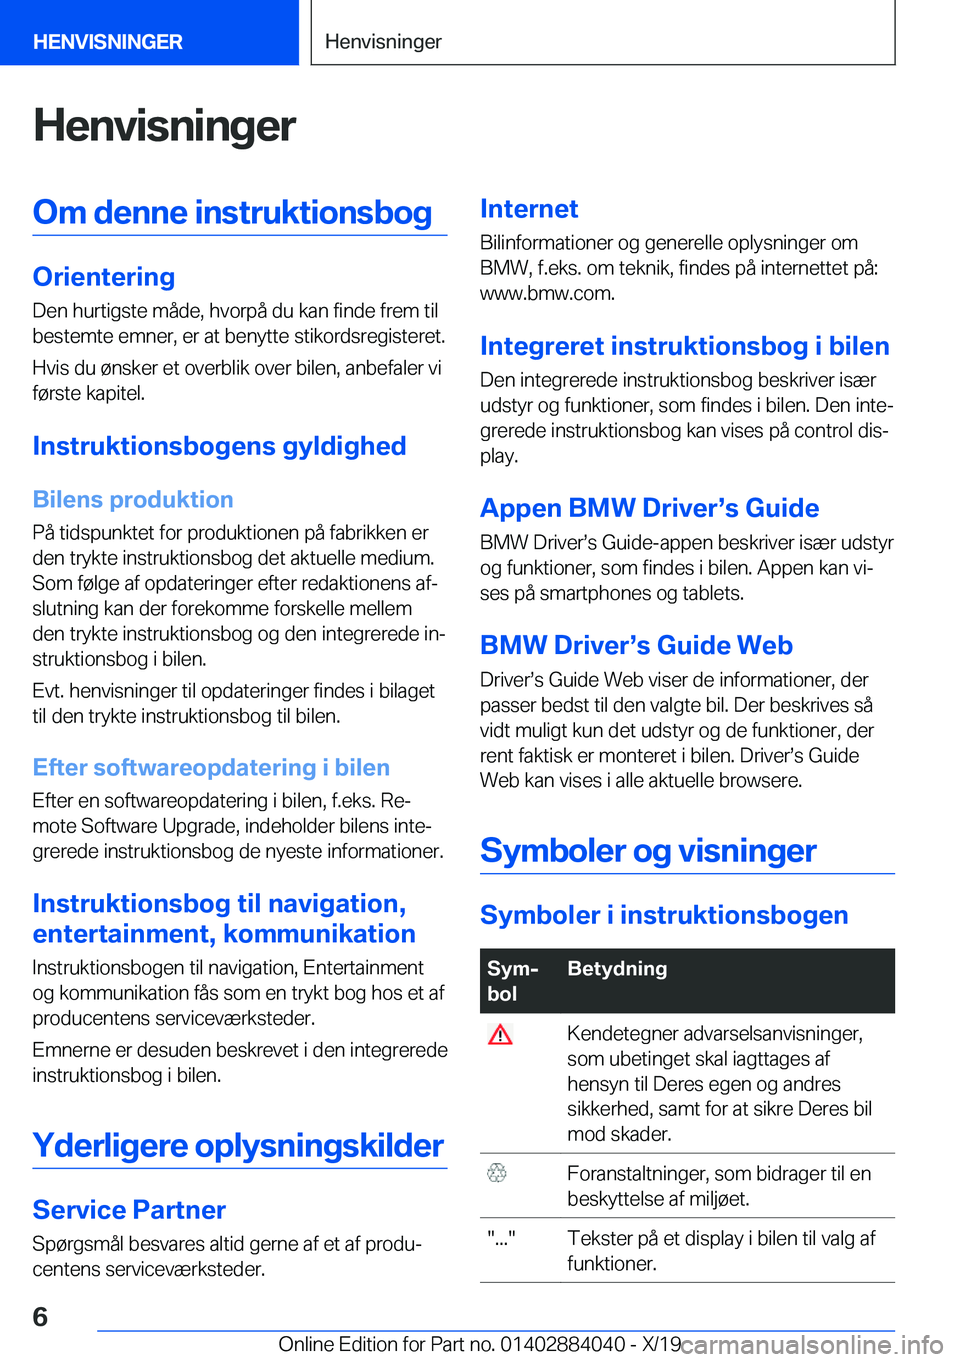 BMW 7 SERIES 2020  InstruktionsbØger (in Danish) �H�e�n�v�i�s�n�i�n�g�e�r�O�m��d�e�n�n�e��i�n�s�t�r�u�k�t�i�o�n�s�b�o�g
�O�r�i�e�n�t�e�r�i�n�g�D�e�n��h�u�r�t�i�g�s�t�e��m�å�d�e�,��h�v�o�r�p�å��d�u��k�a�n��f�i�n�d�e��f�r�e�m��t�i�l
�b�e�s